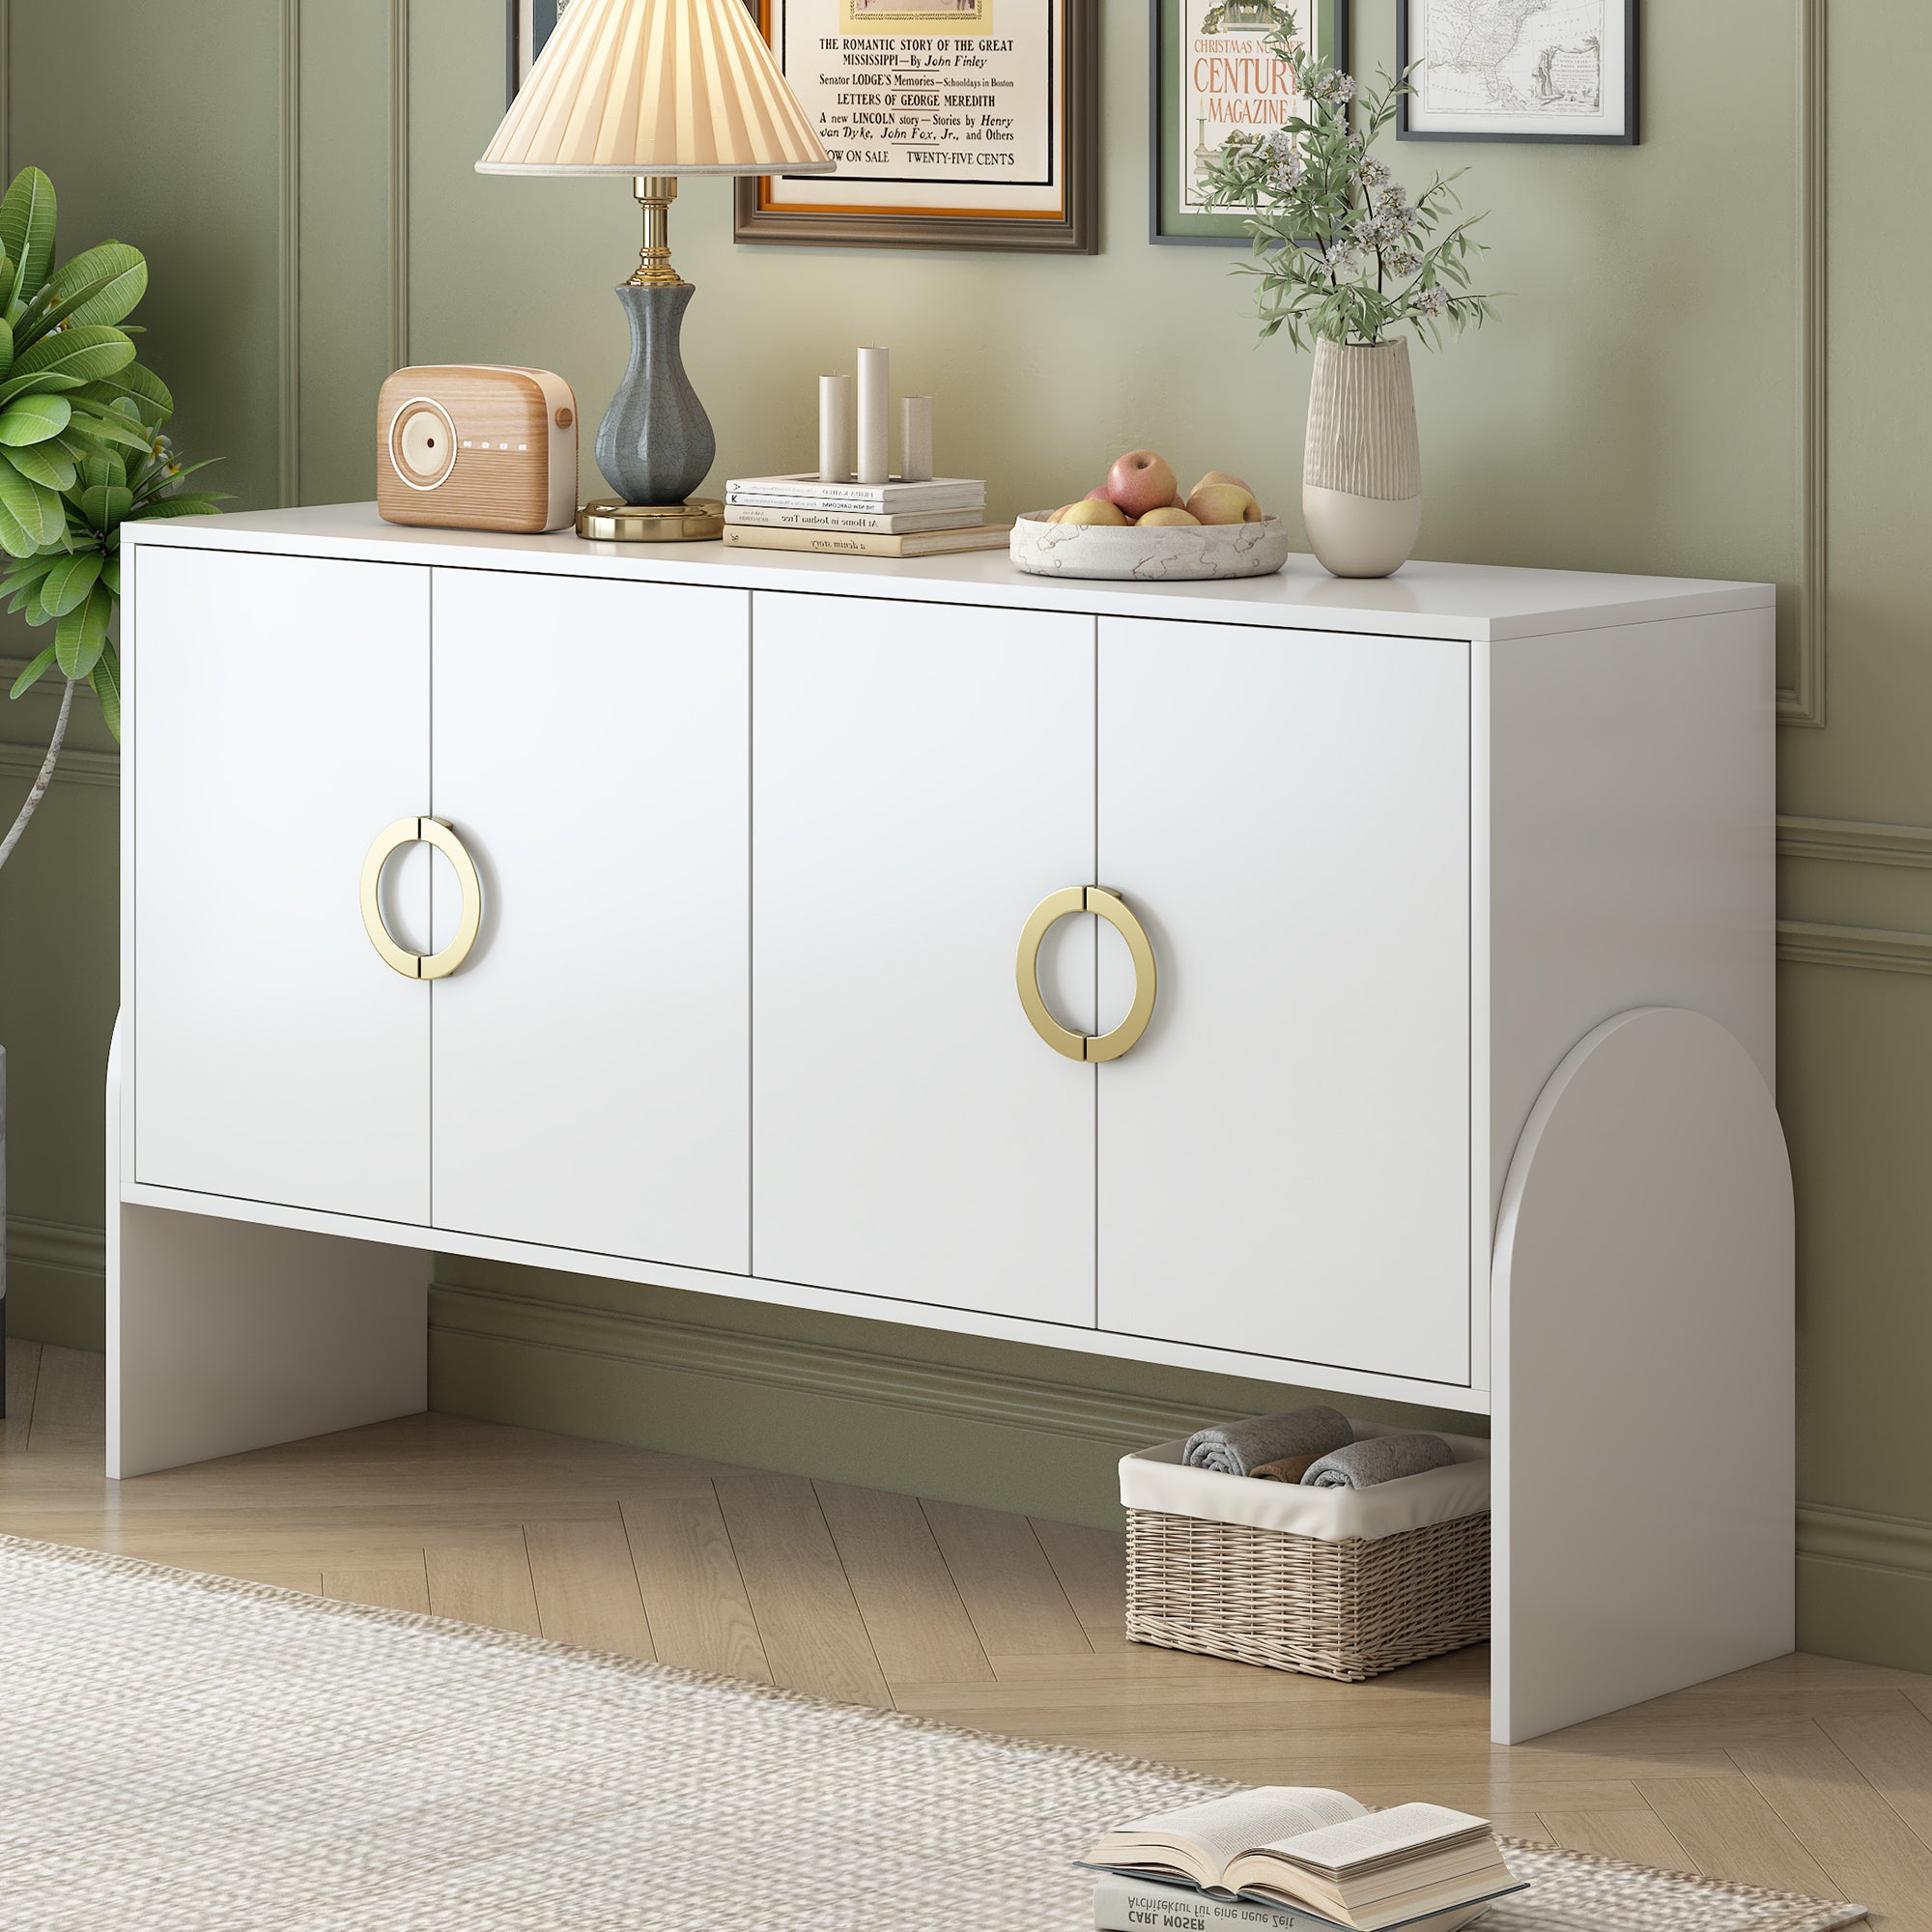 🆓🚛 4-Door Storage Cabinet, Metal Handle, Suitable for Study, Living Room, Bedroom, White